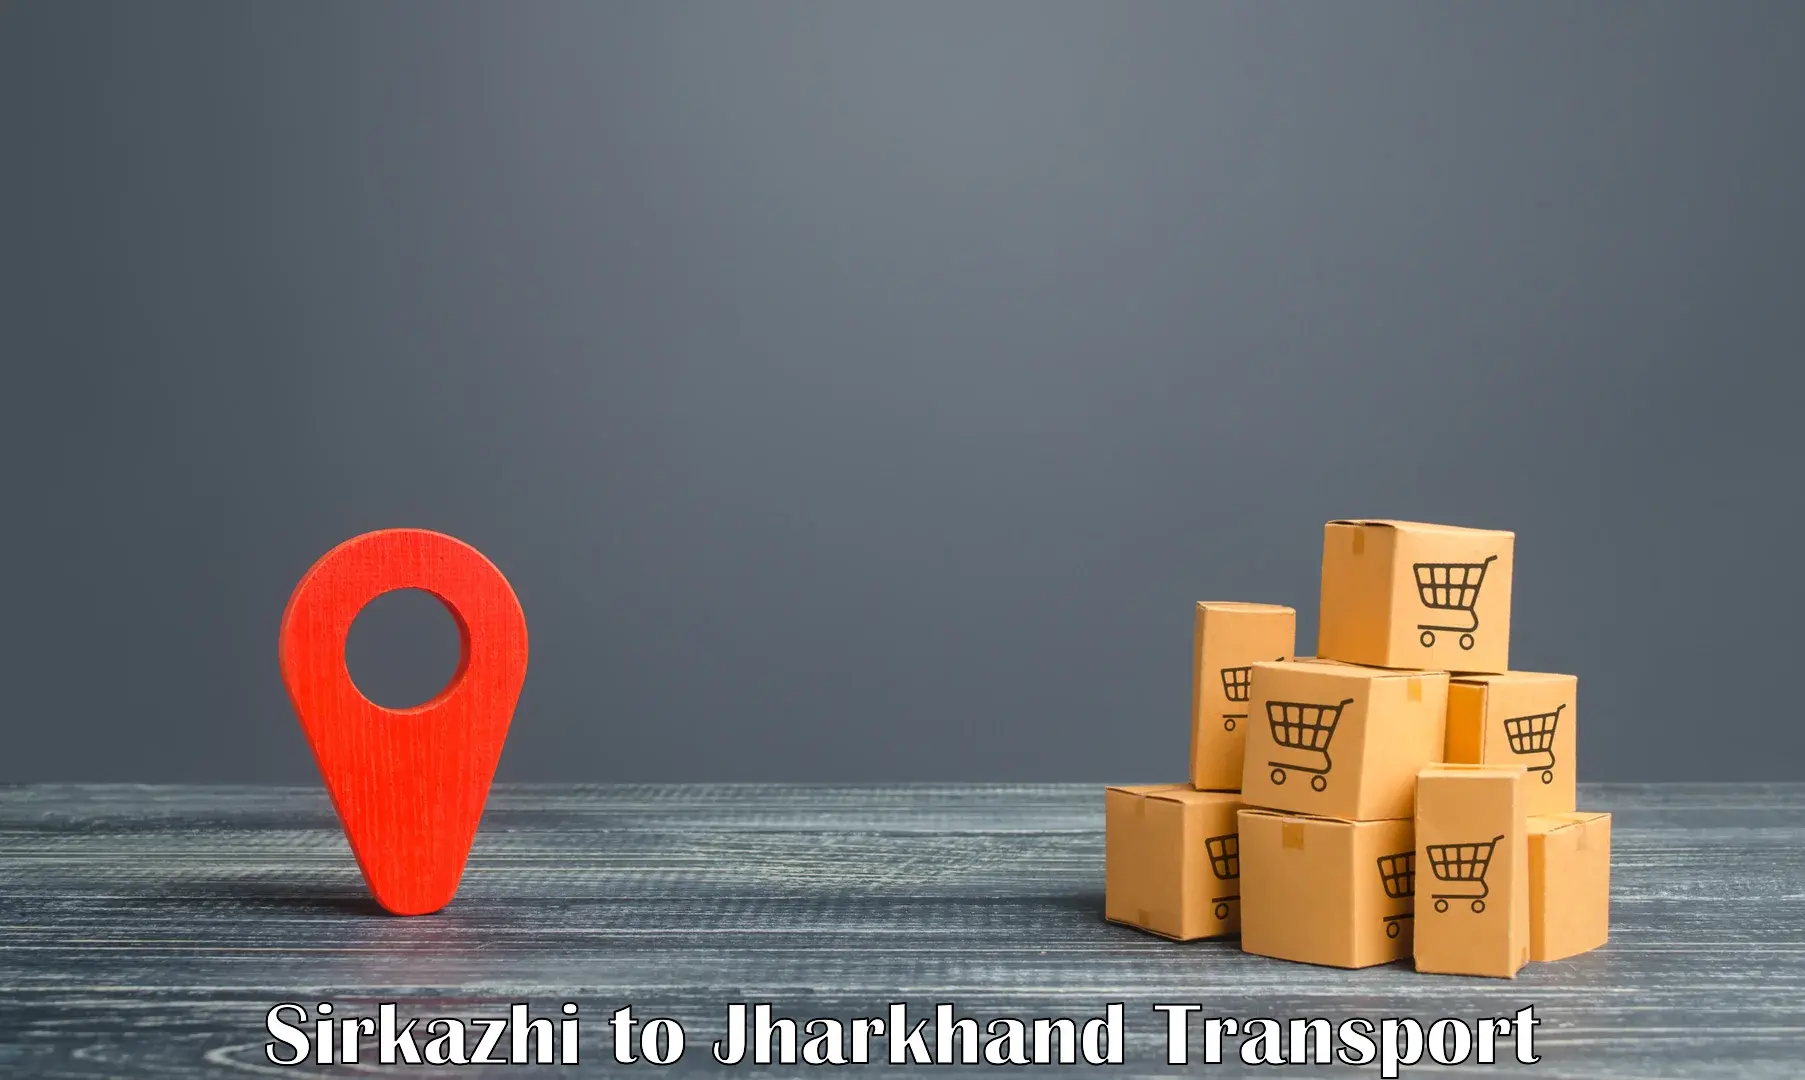 Furniture transport service Sirkazhi to Tandwa